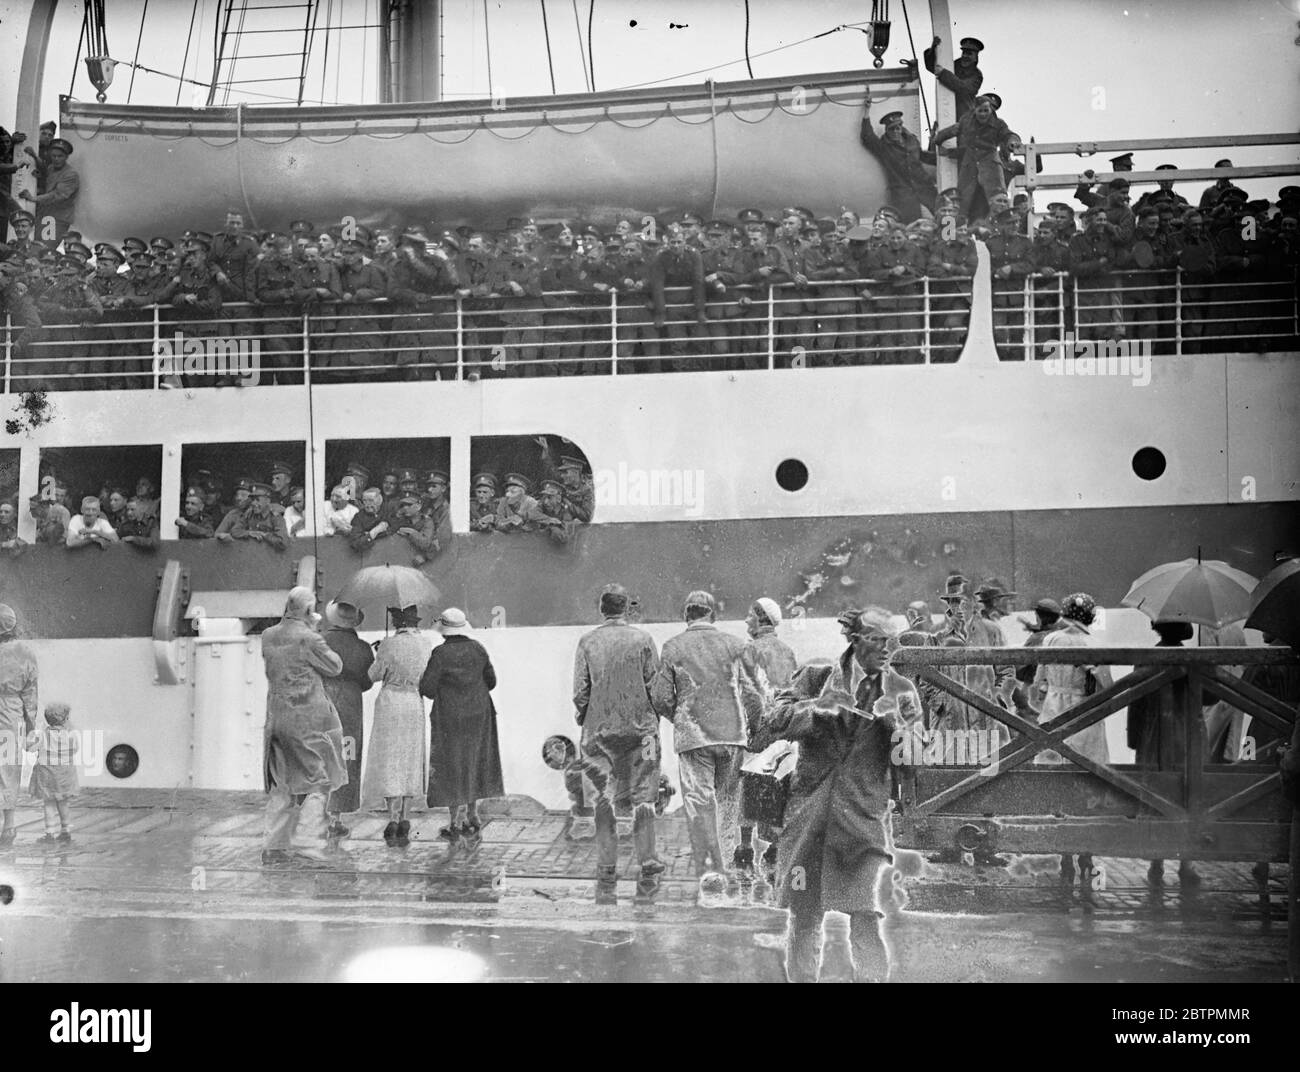 Truppen segeln nach Palästina . Die ersten Truppen der Ersten Division segelten von Southampton aus auf der Dorsetshire nach Palästina, wo Verstärkung geschickt wird, um arabische Terroristen zu unterdrücken. Foto zeigt, Truppen säumen die Schiene, wie die Dorsetshire segelte. 12. September 1936 Stockfoto